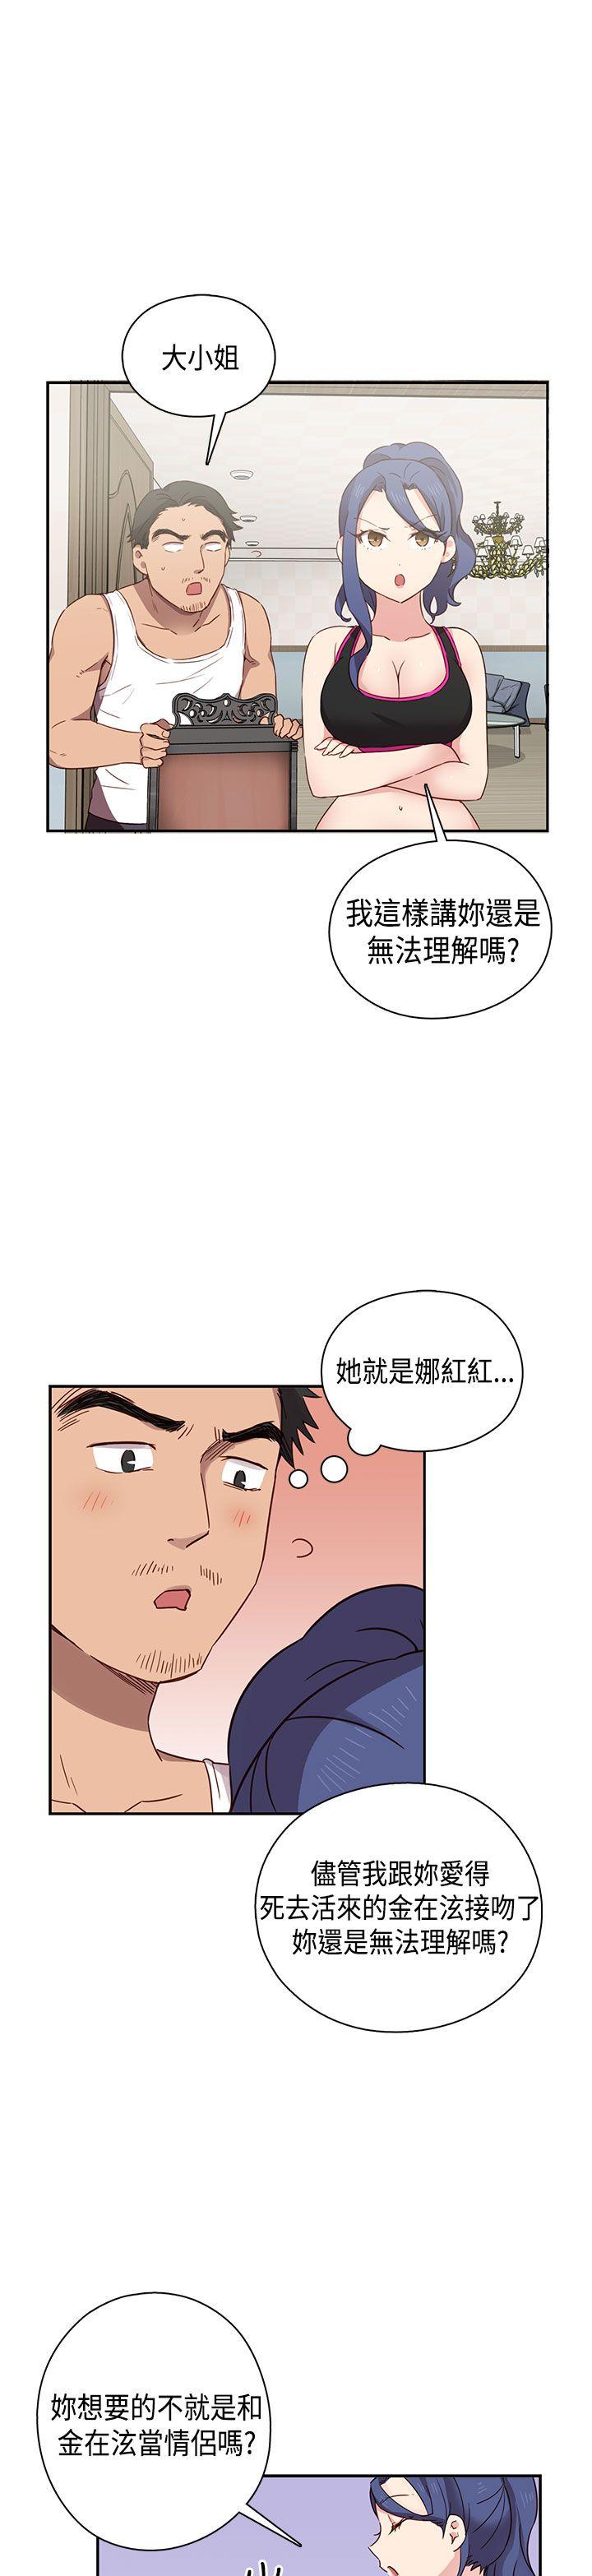 韩国污漫画 H校園 第33话 22